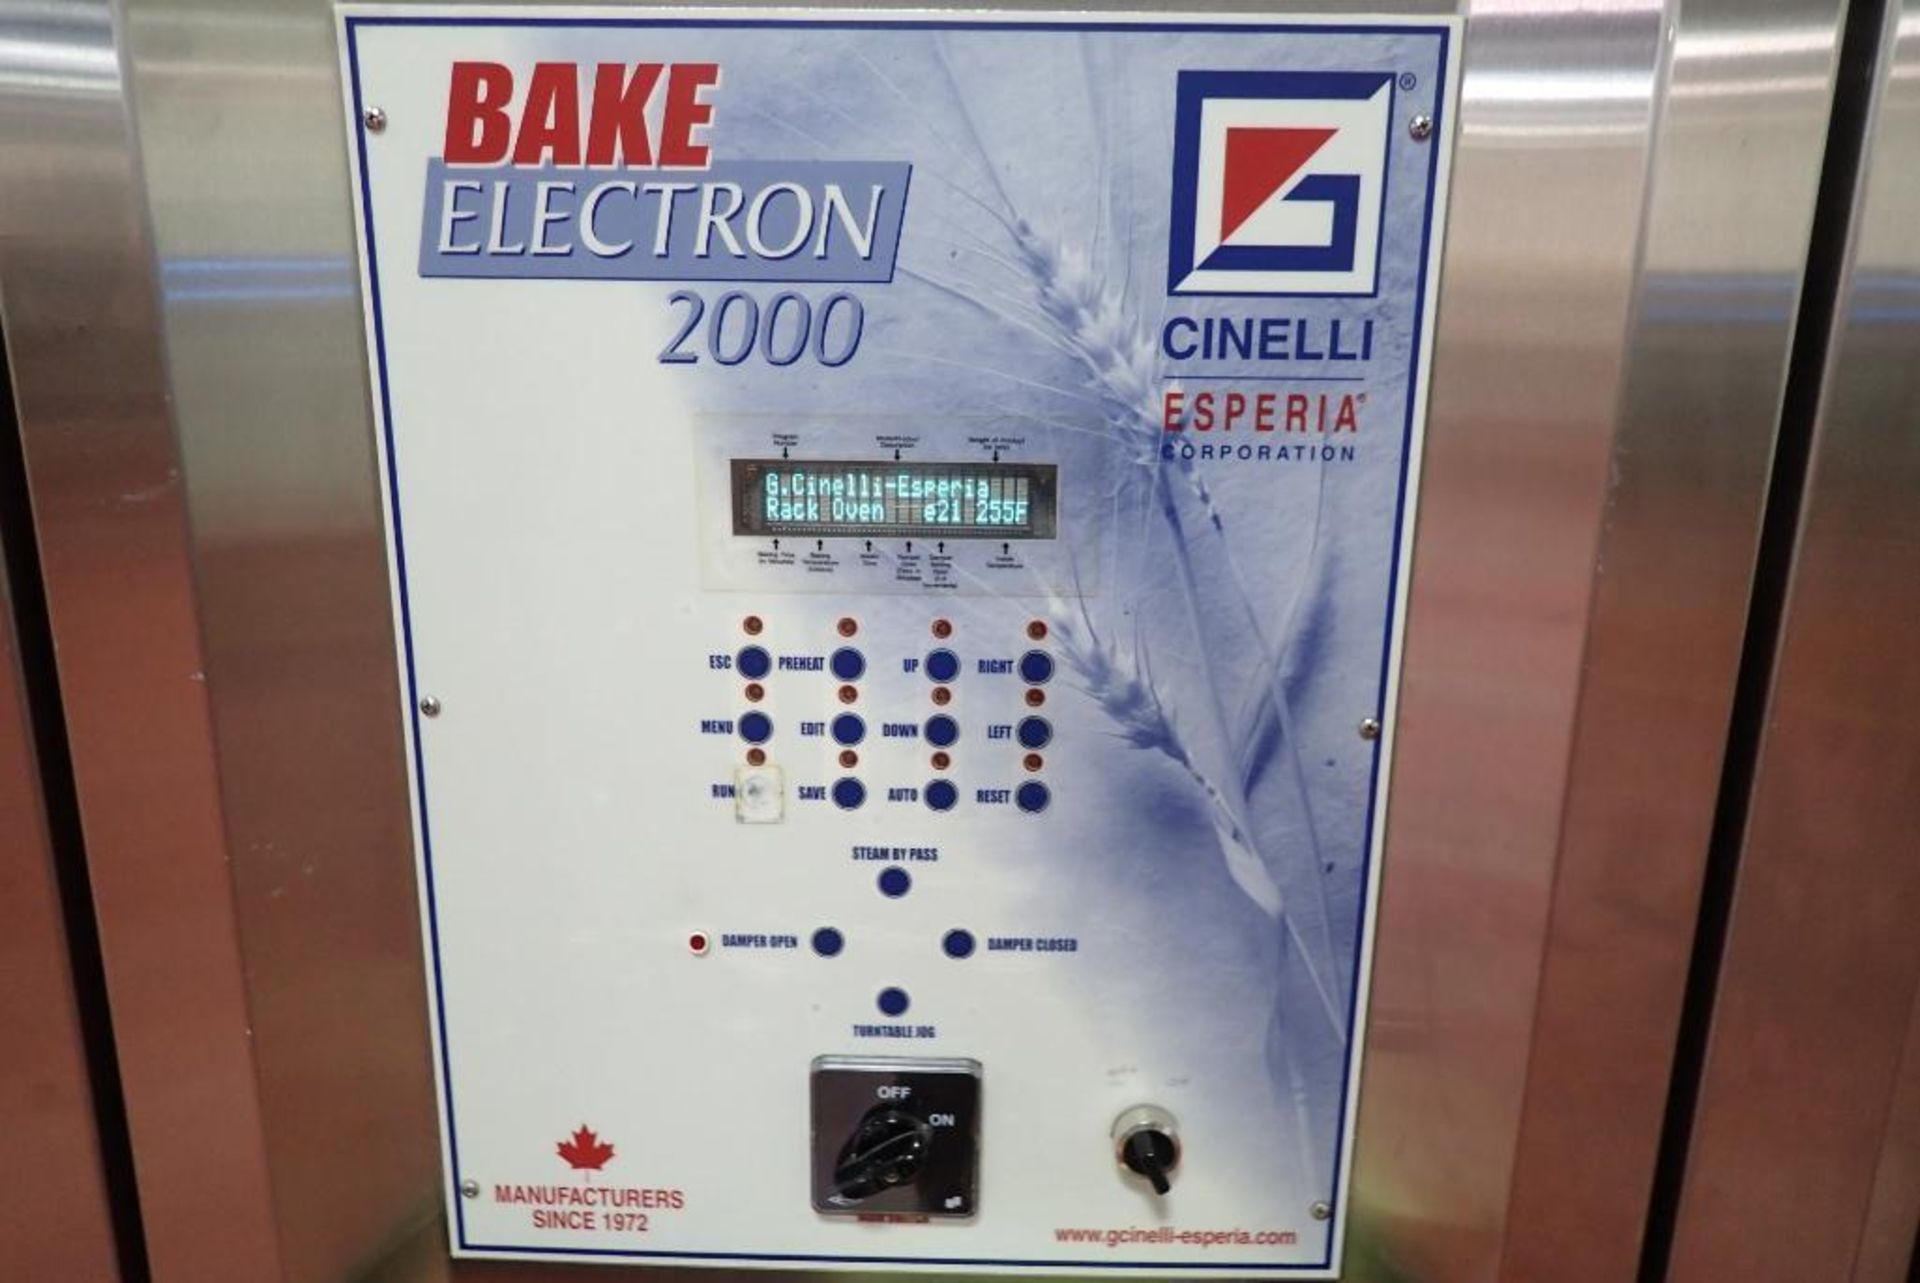 2005 Cinelli Bake Electron 2000 double rack oven - Image 2 of 22